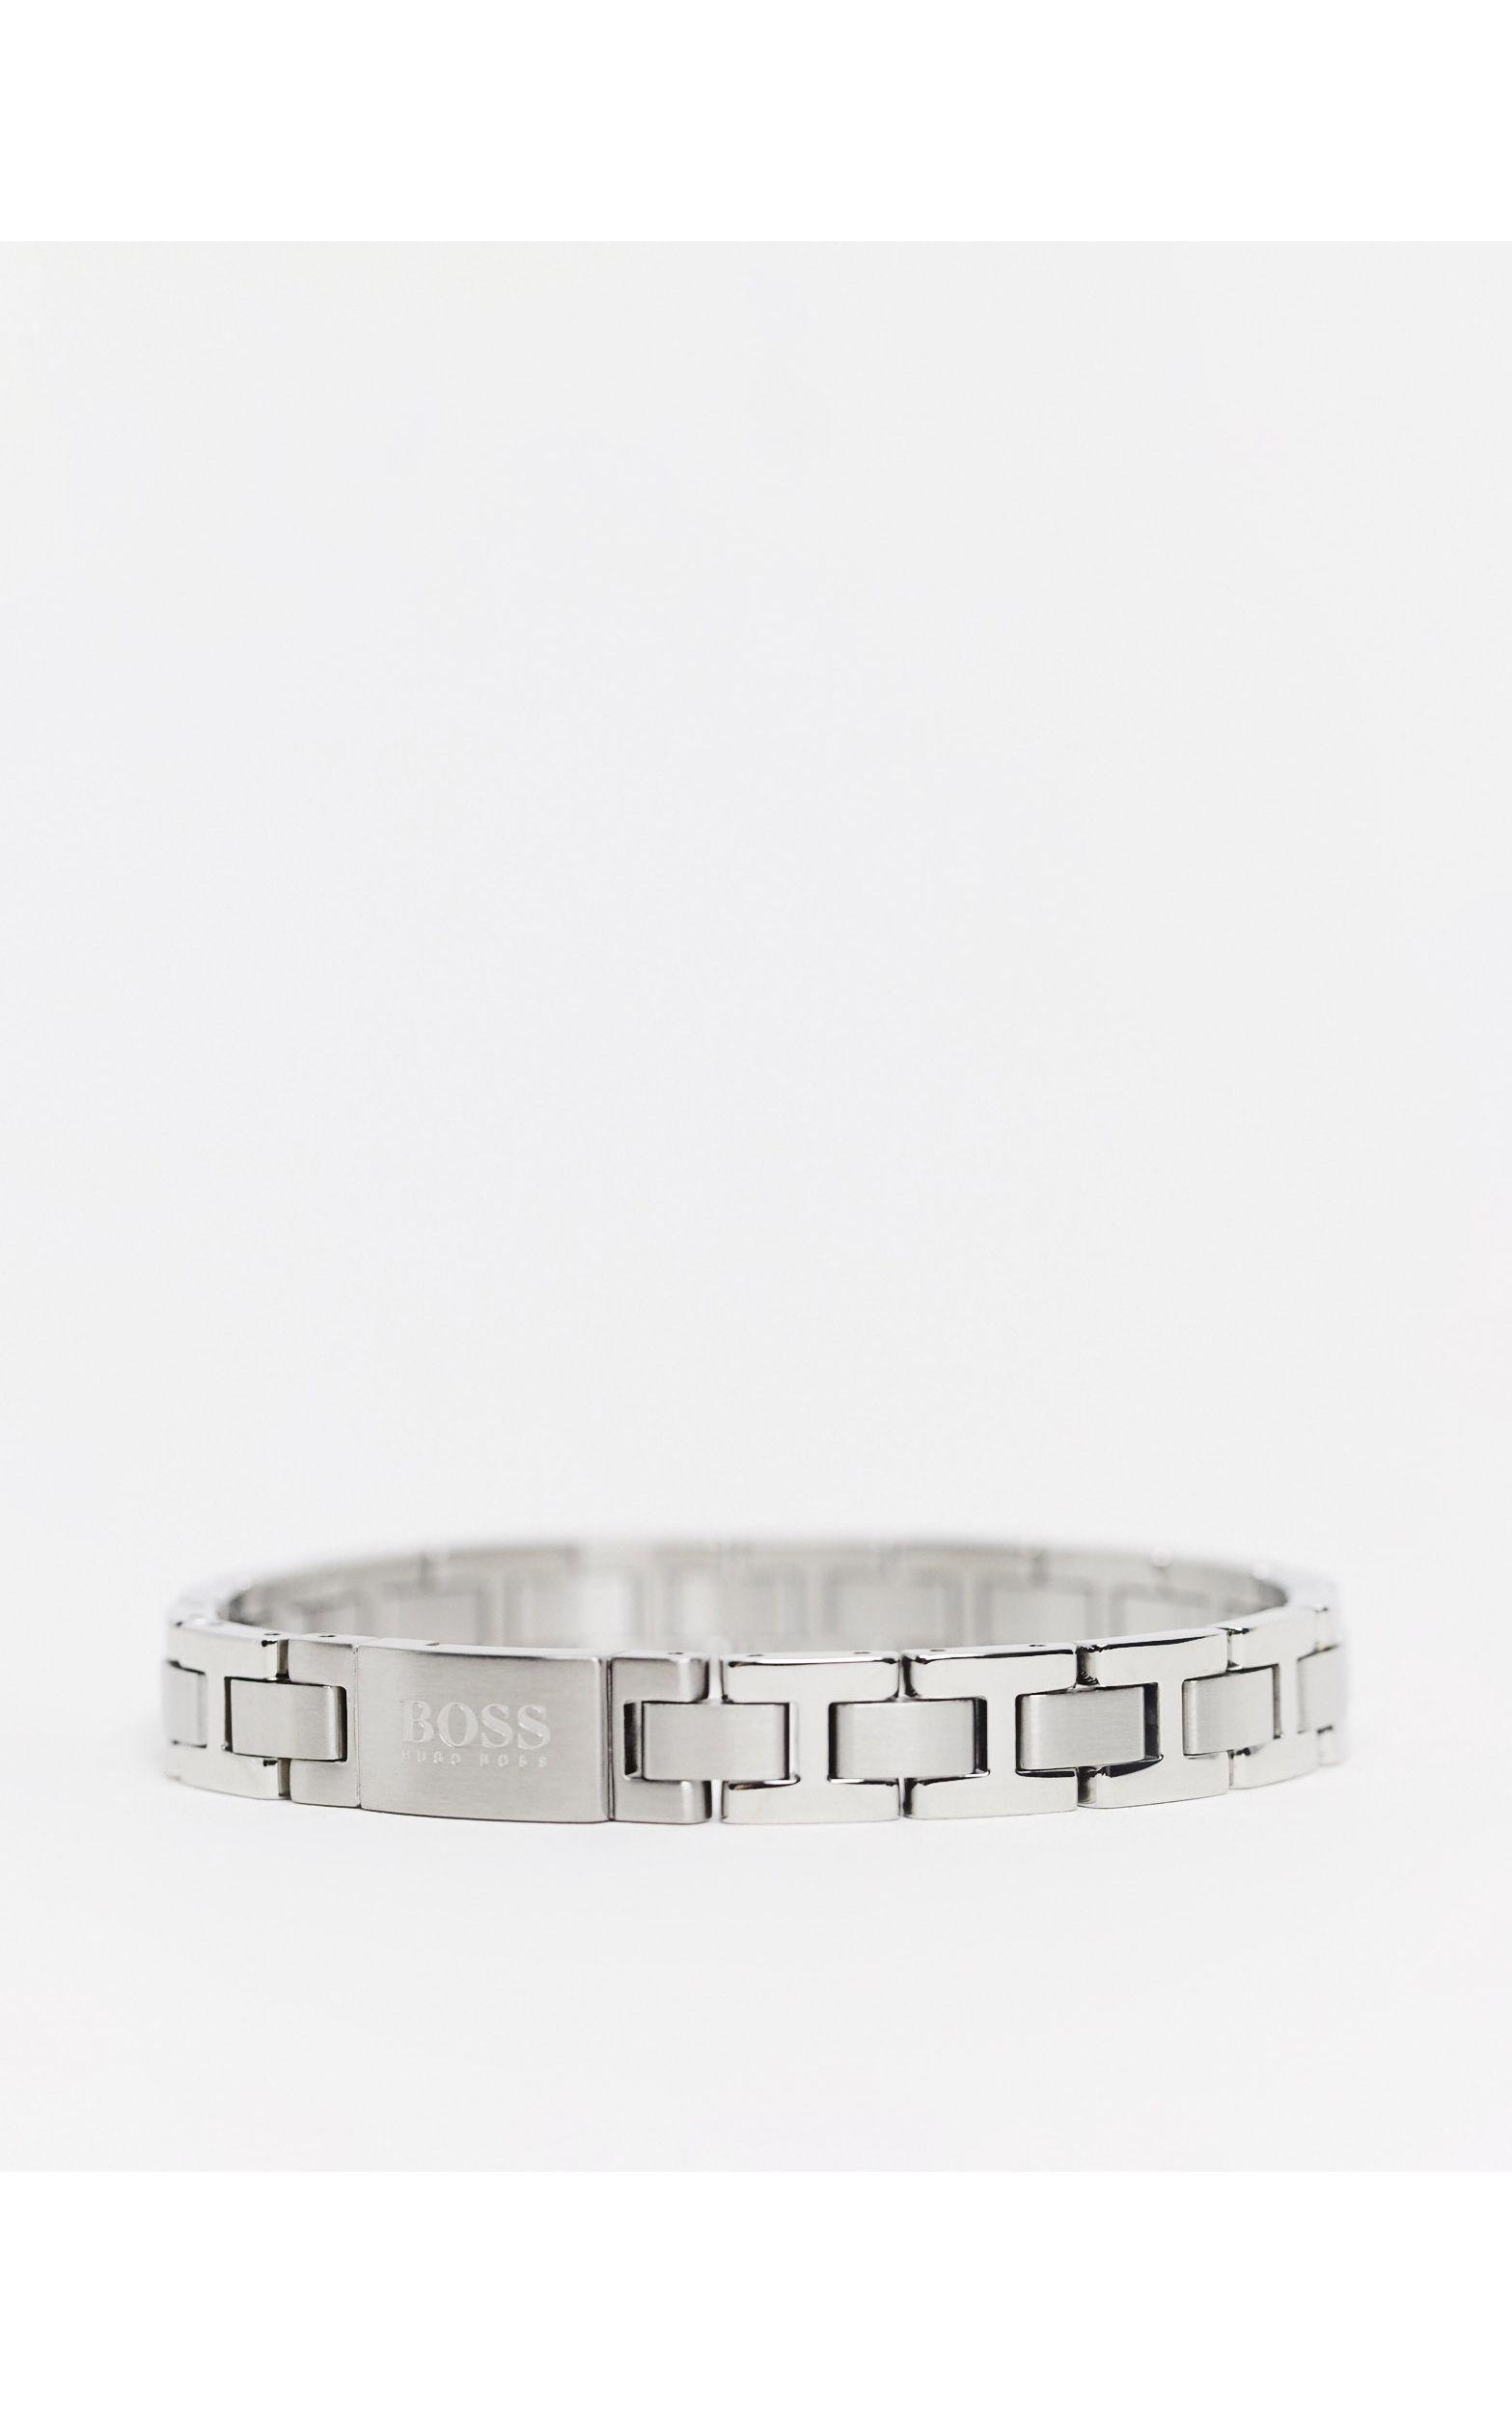 BOSS by HUGO BOSS Metal Link Bracelet in Silver (Metallic) for Men - Lyst